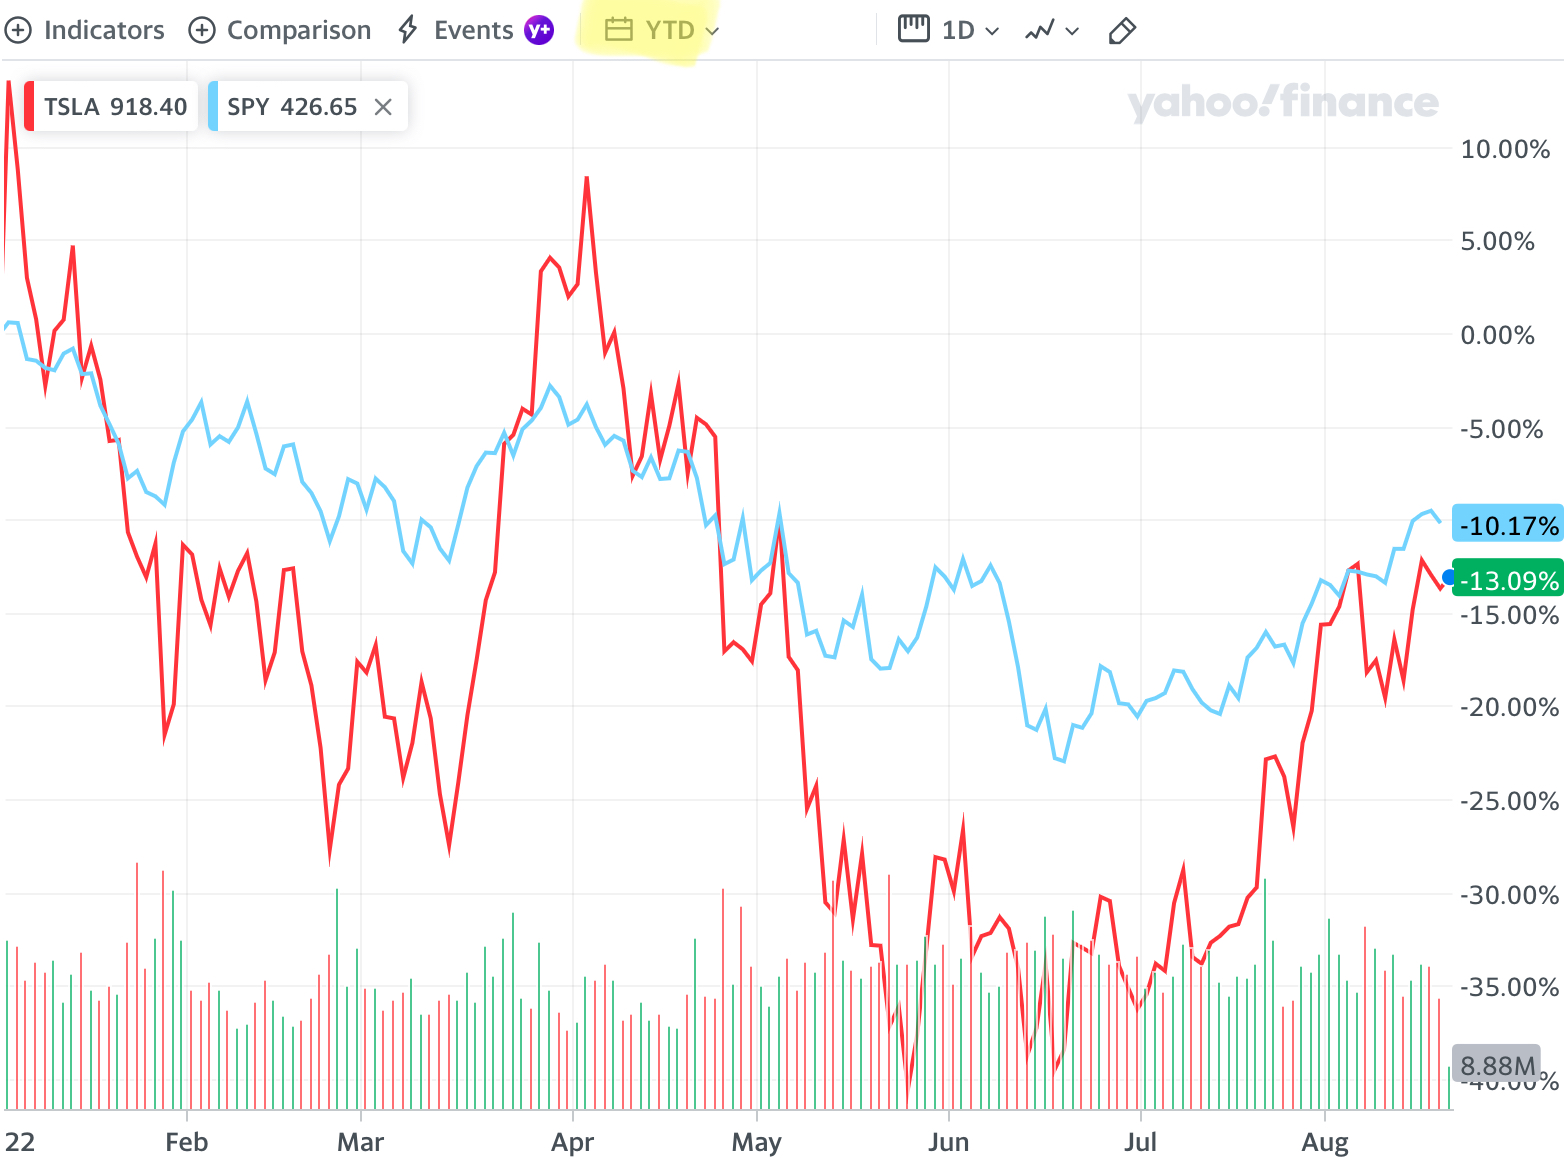 TSLA Interactive Stock Chart  Tesla, Inc. Stock - Yahoo Finance.png